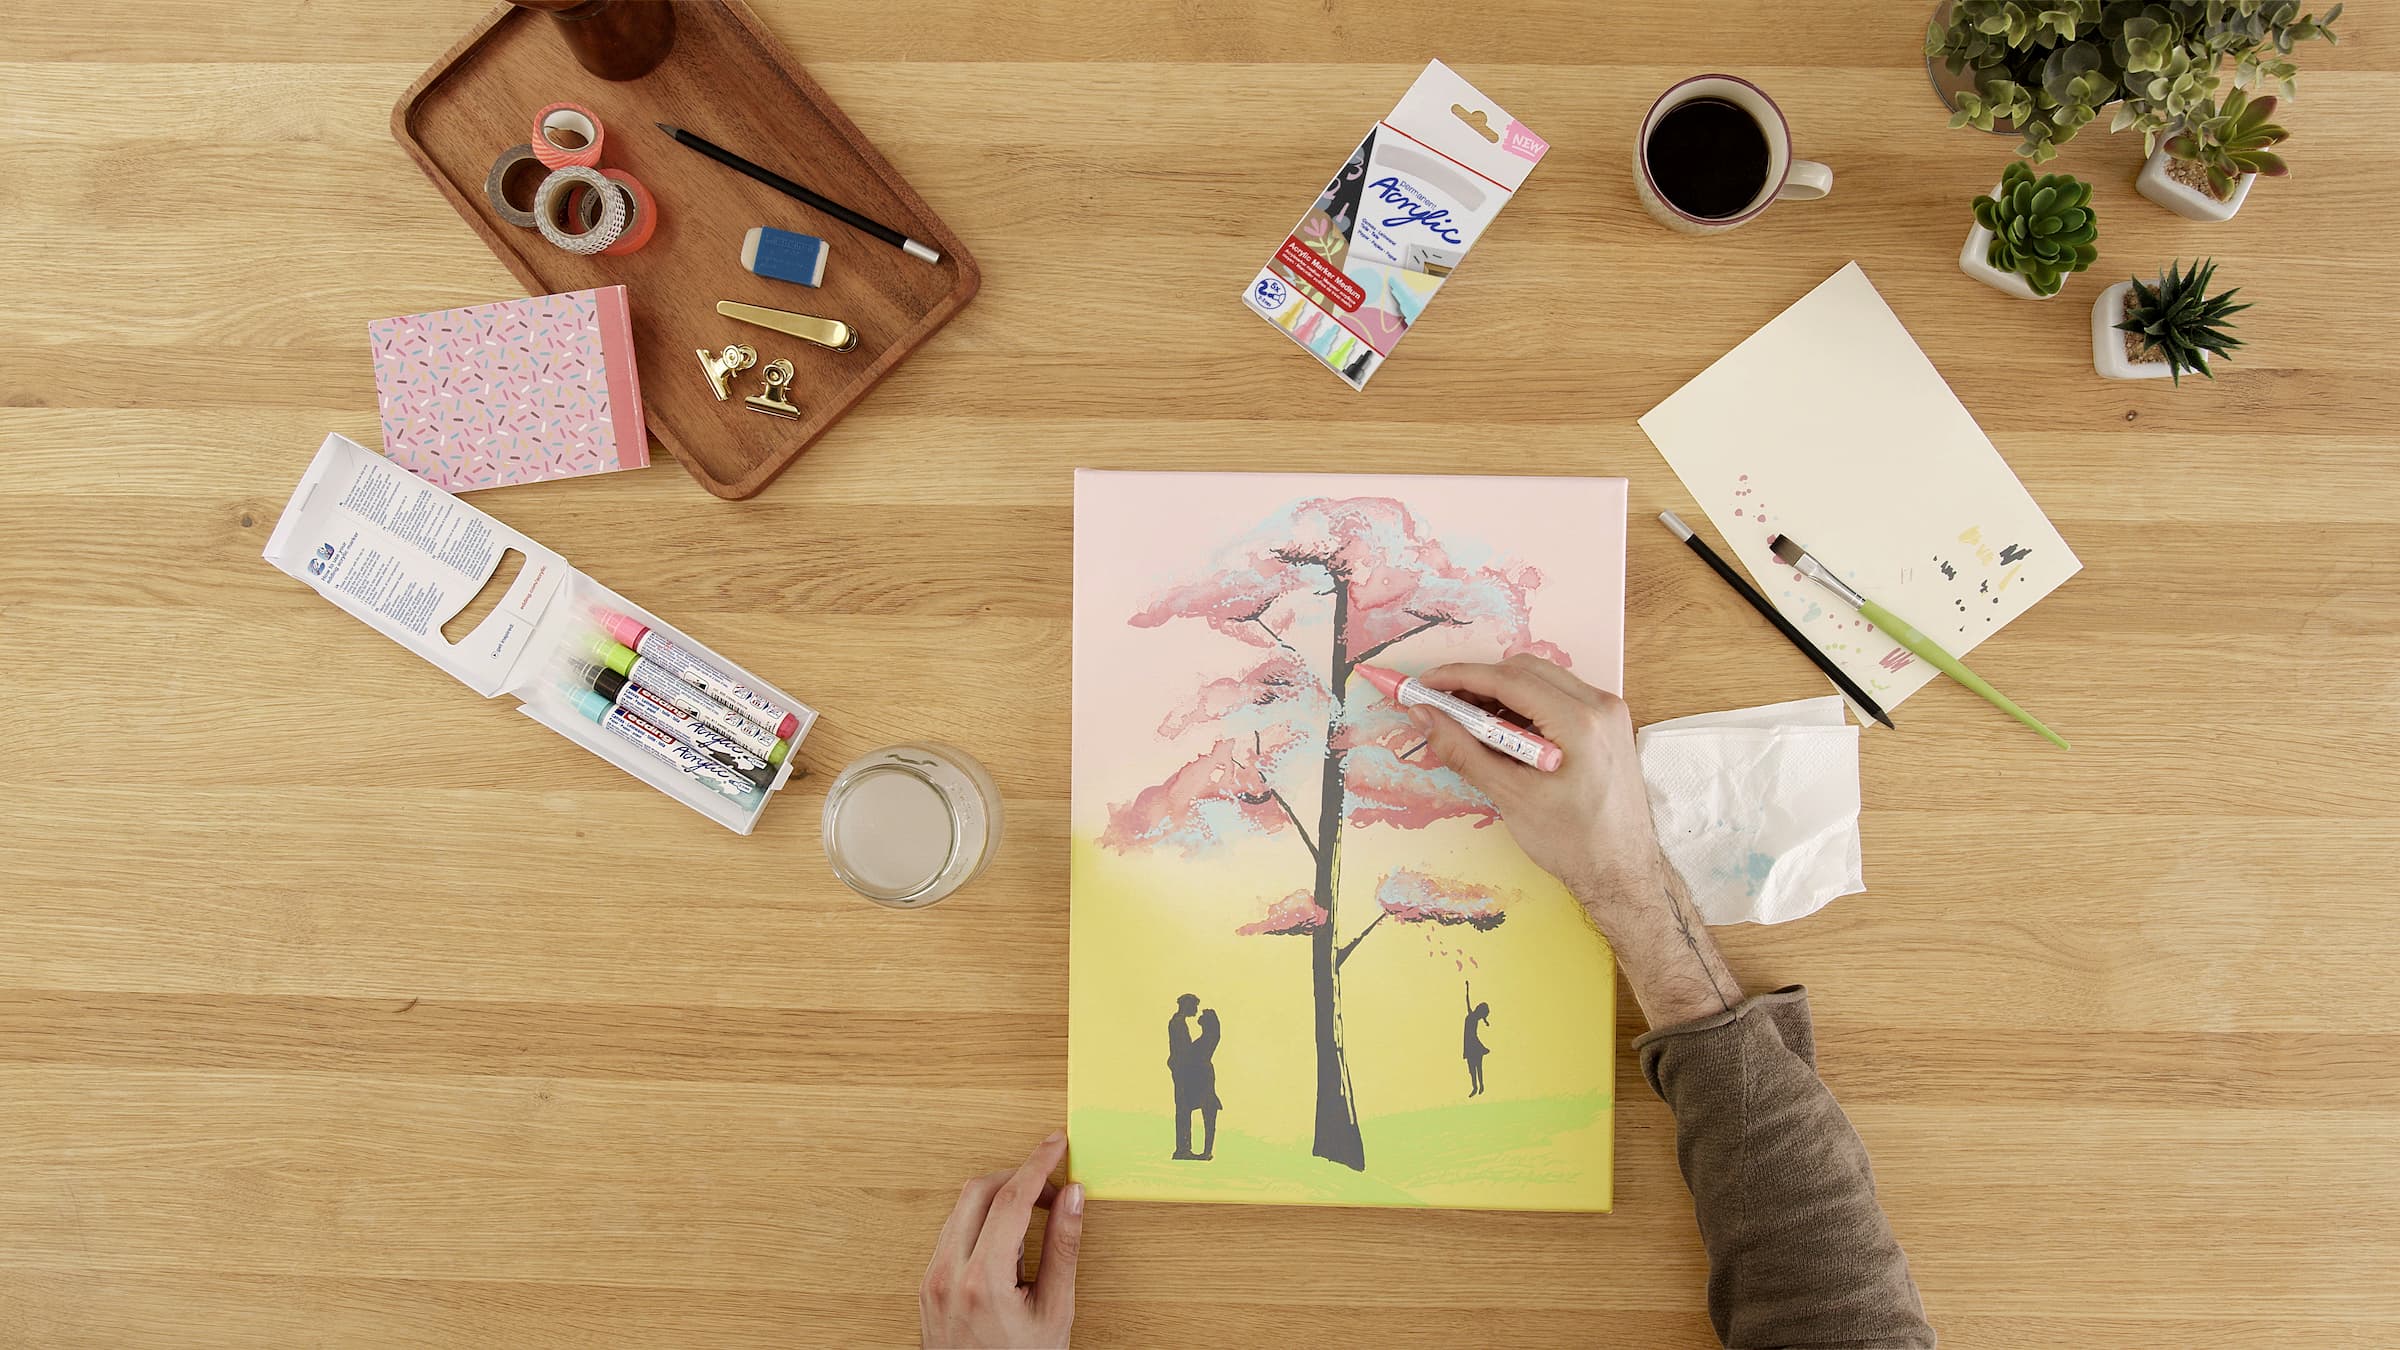 Die Hände eines Künstlers fügen mit dem edding 5100 Acrylmarker medium 5er-Set sorgfältig Details zu einem Aquarellbild eines blühenden Baumes hinzu, umgeben von Malutensilien und persönlichen Gegenständen auf einem Holztisch.